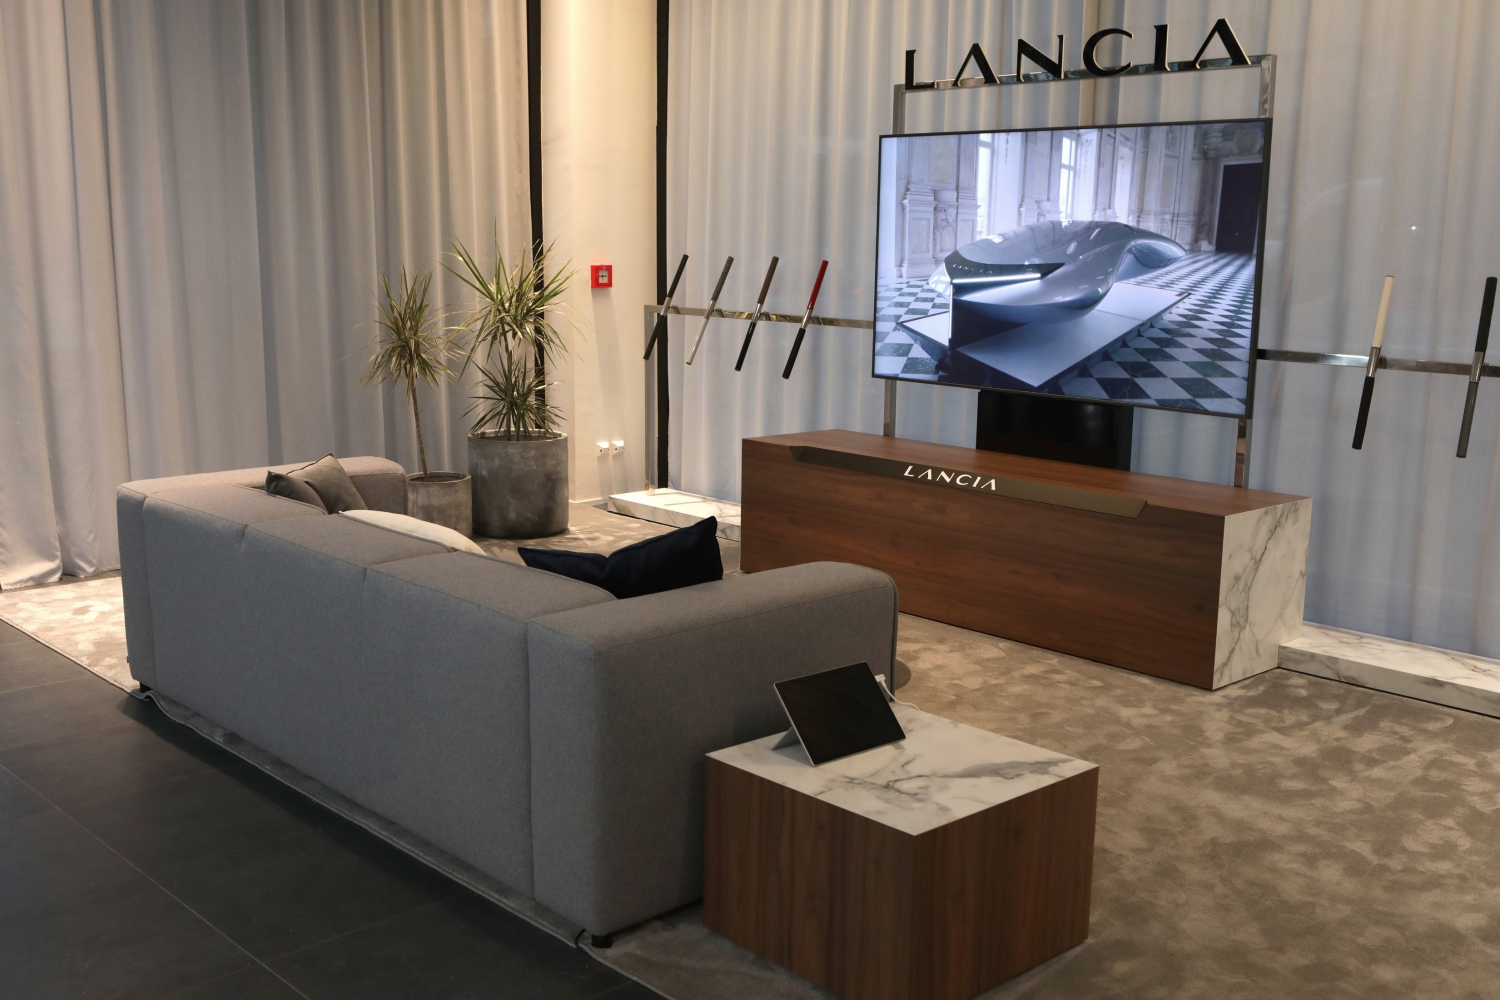 Os novos showrooms da Lancia prometem ser espaços acolhedores e cheios de estilo